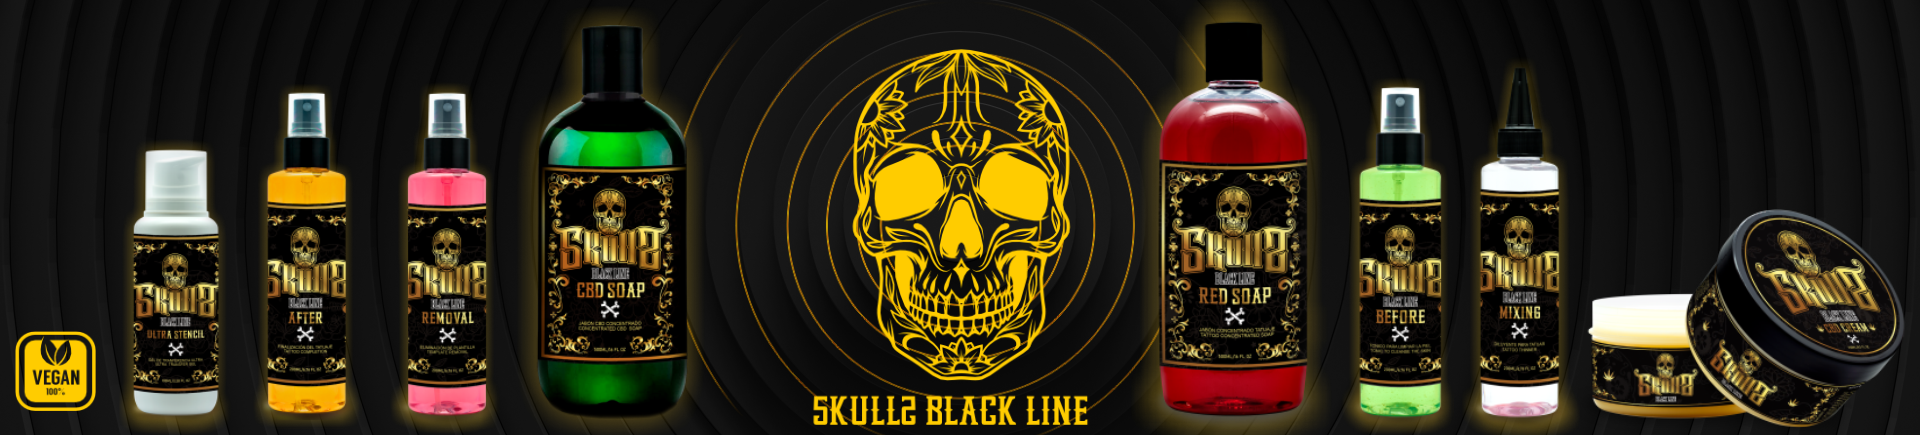 Skulls Blackline